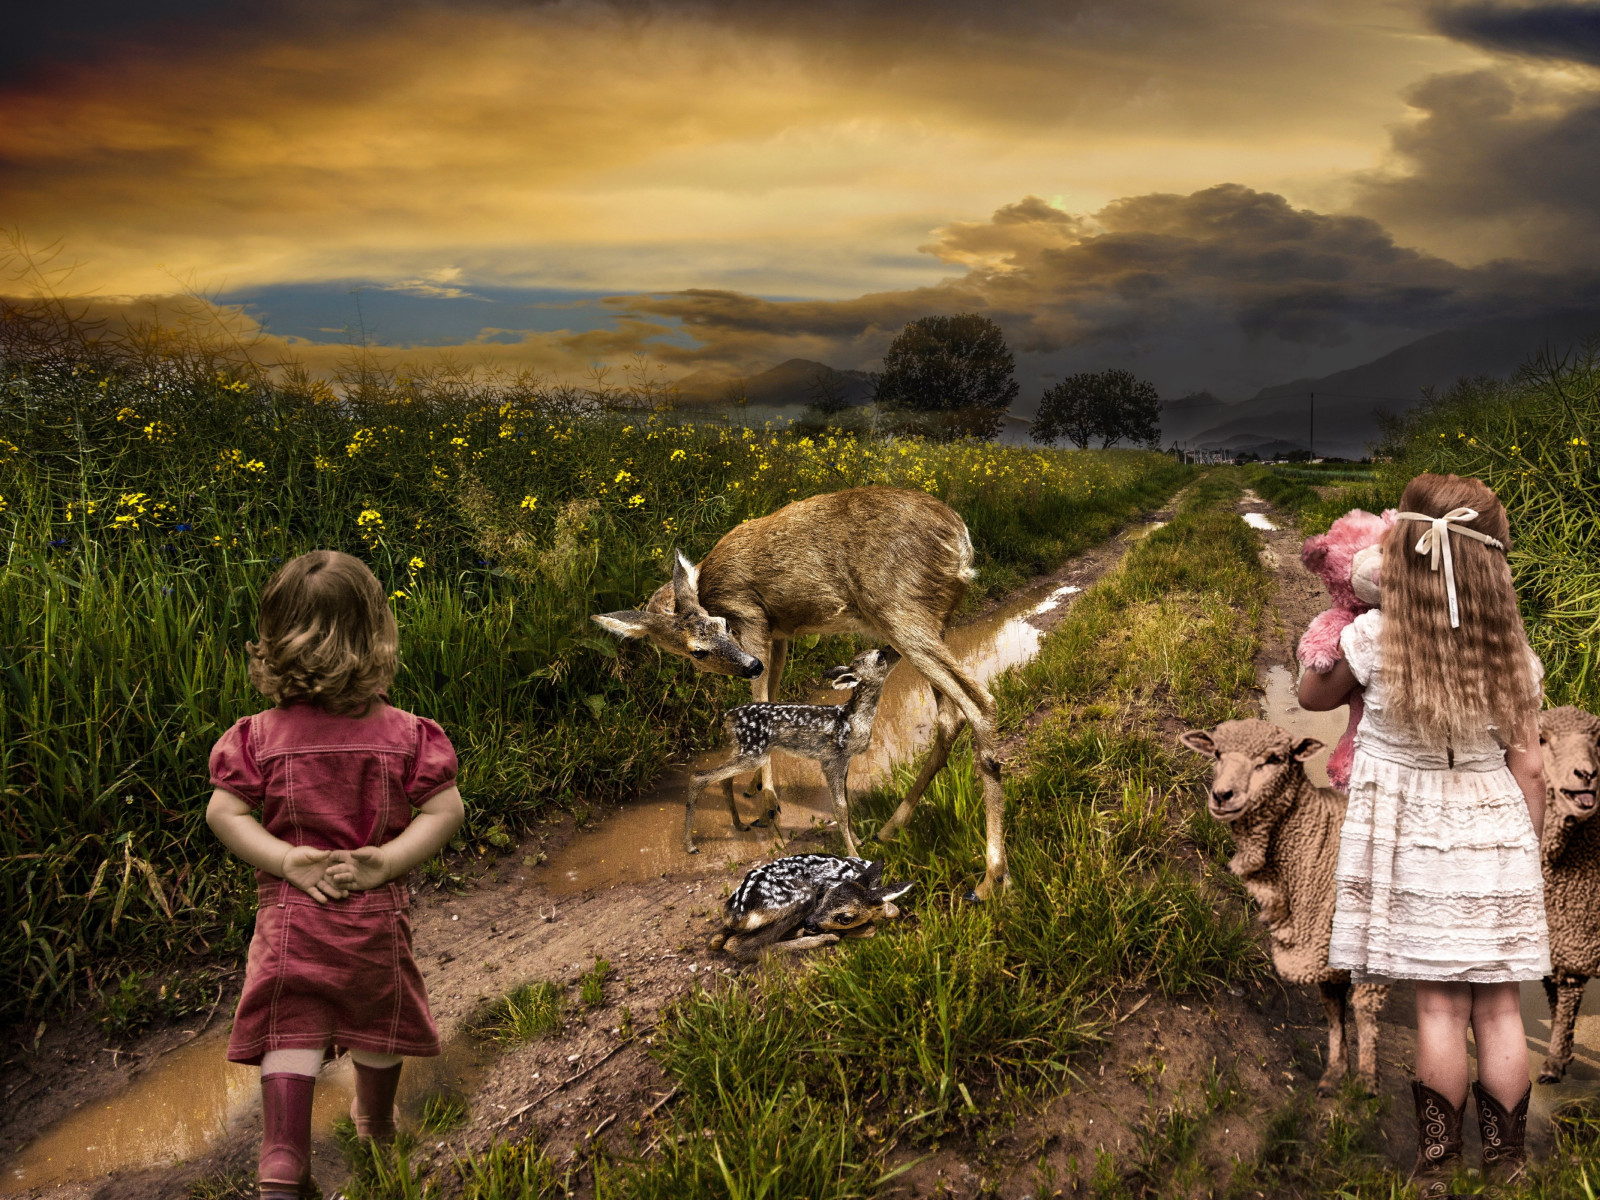 Children, sheep and deer wallpaper 1600x1200